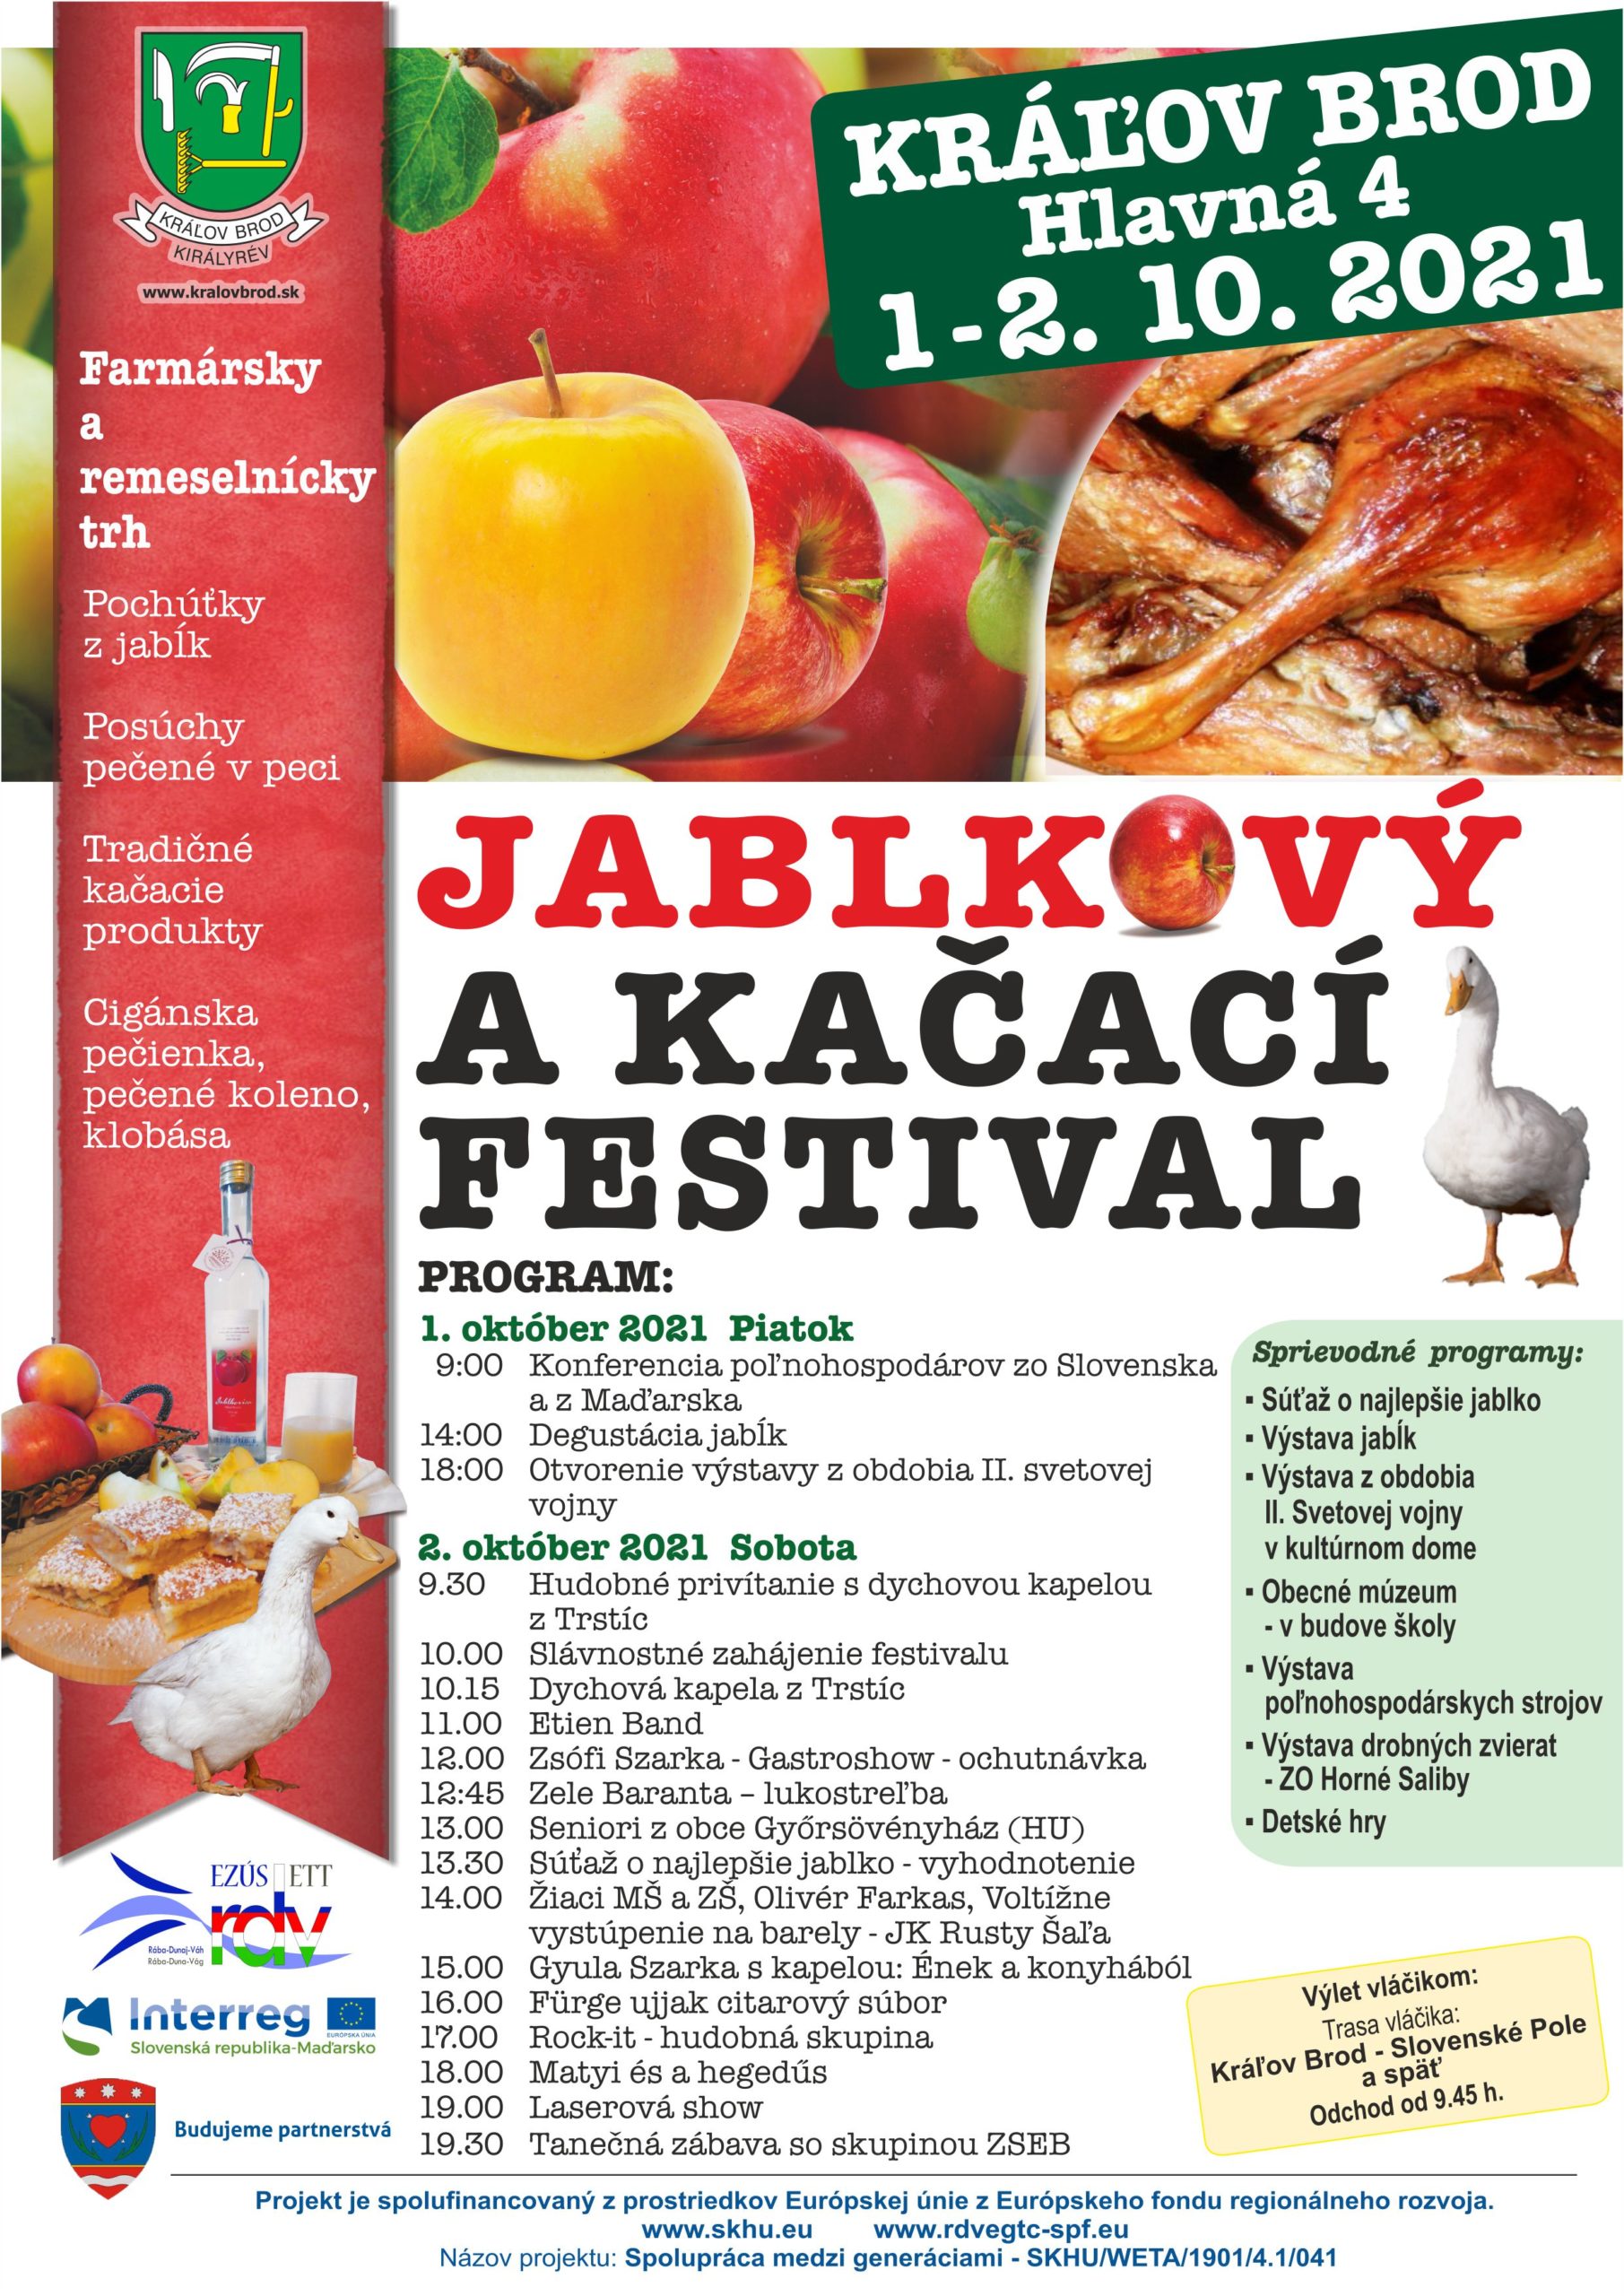 NOV - - - Jablkov a kaac festival 2021 Krov Brod